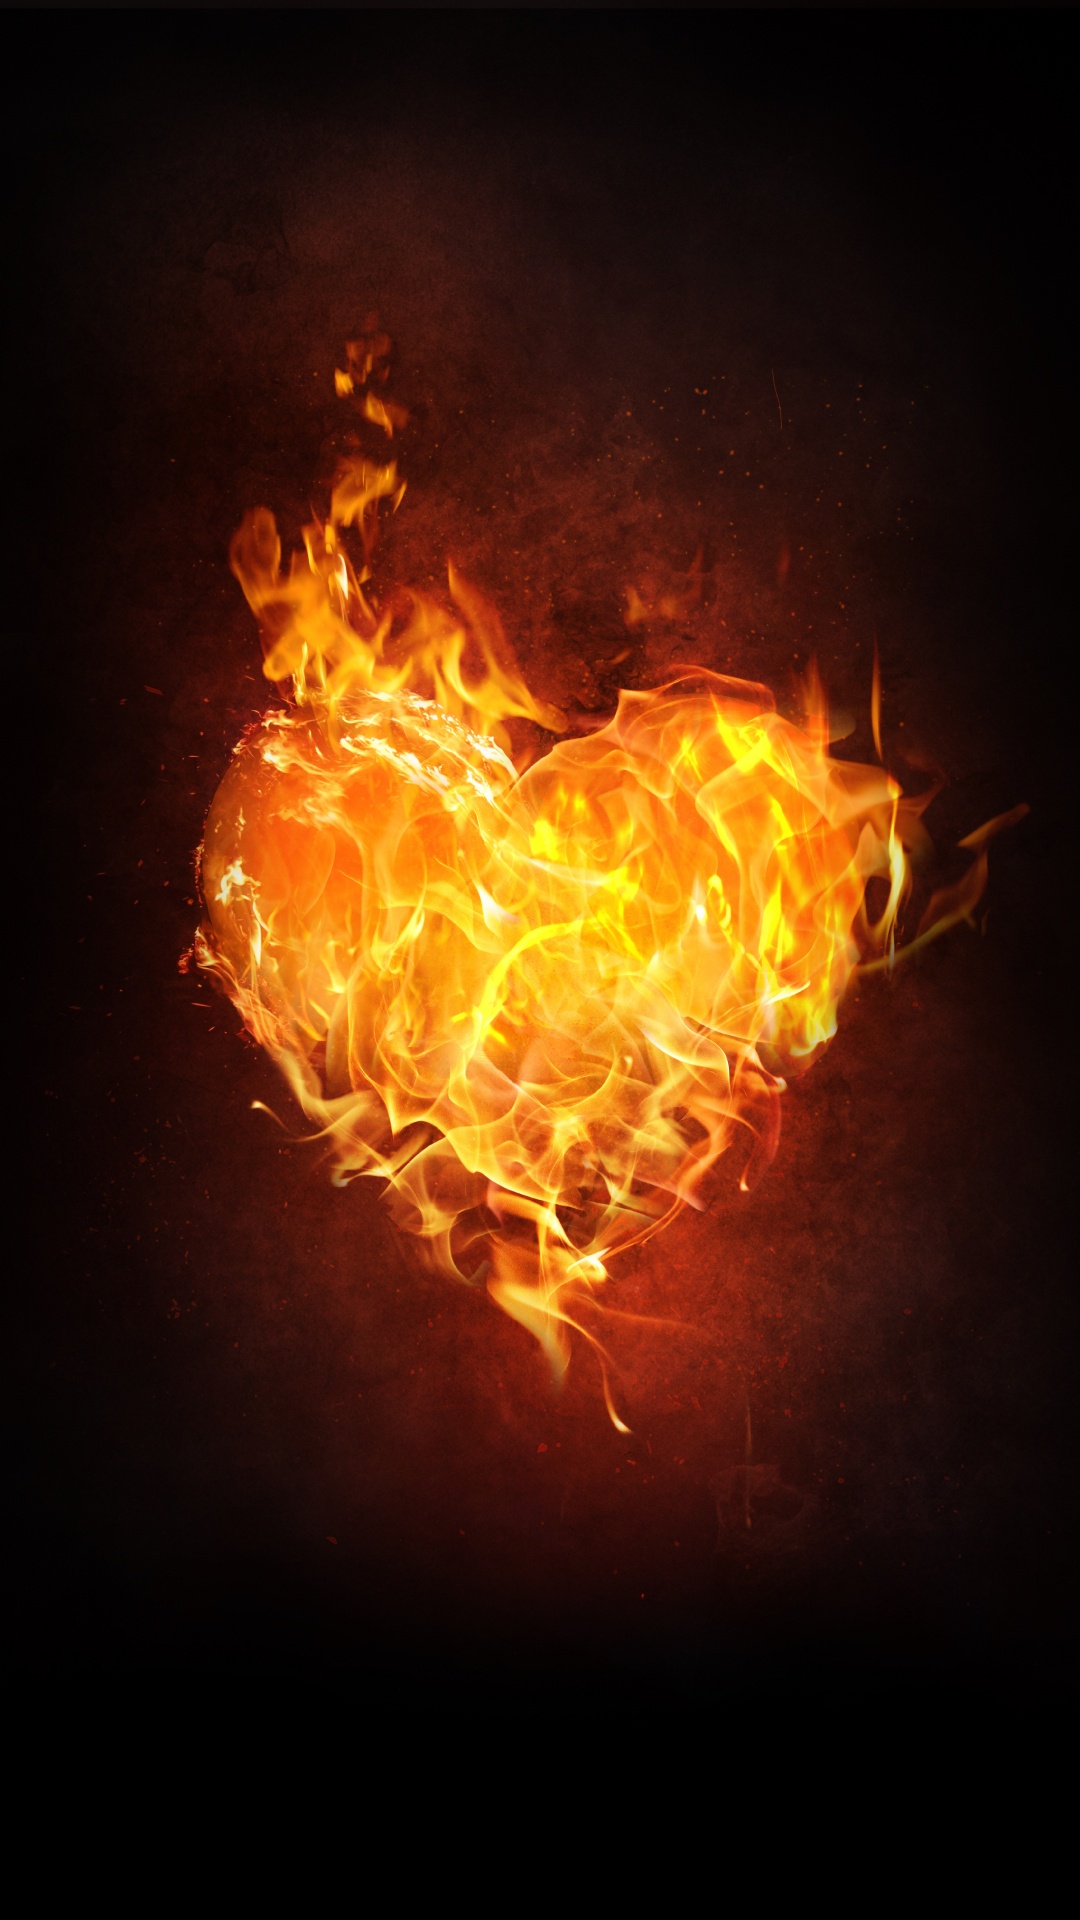 Flame, Fire, Heart, Heat, Orange. Wallpaper in 1080x1920 Resolution